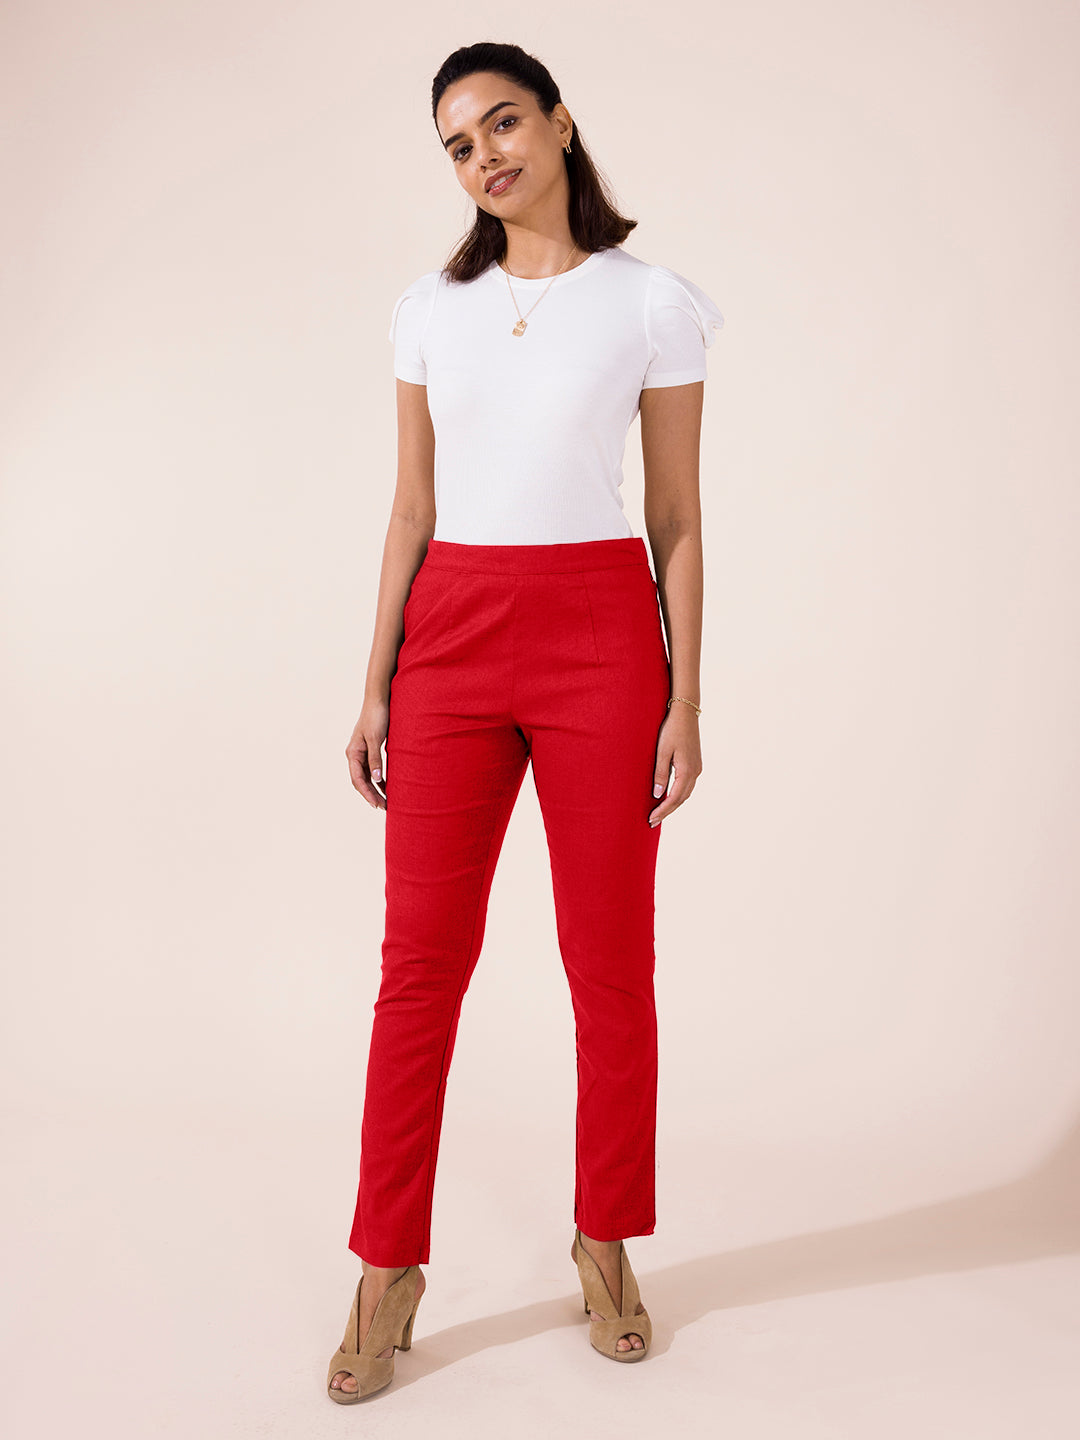 Cotton Pants for Women's | Solid Cherry Comfort Fit Cotton Pants - Go Colors